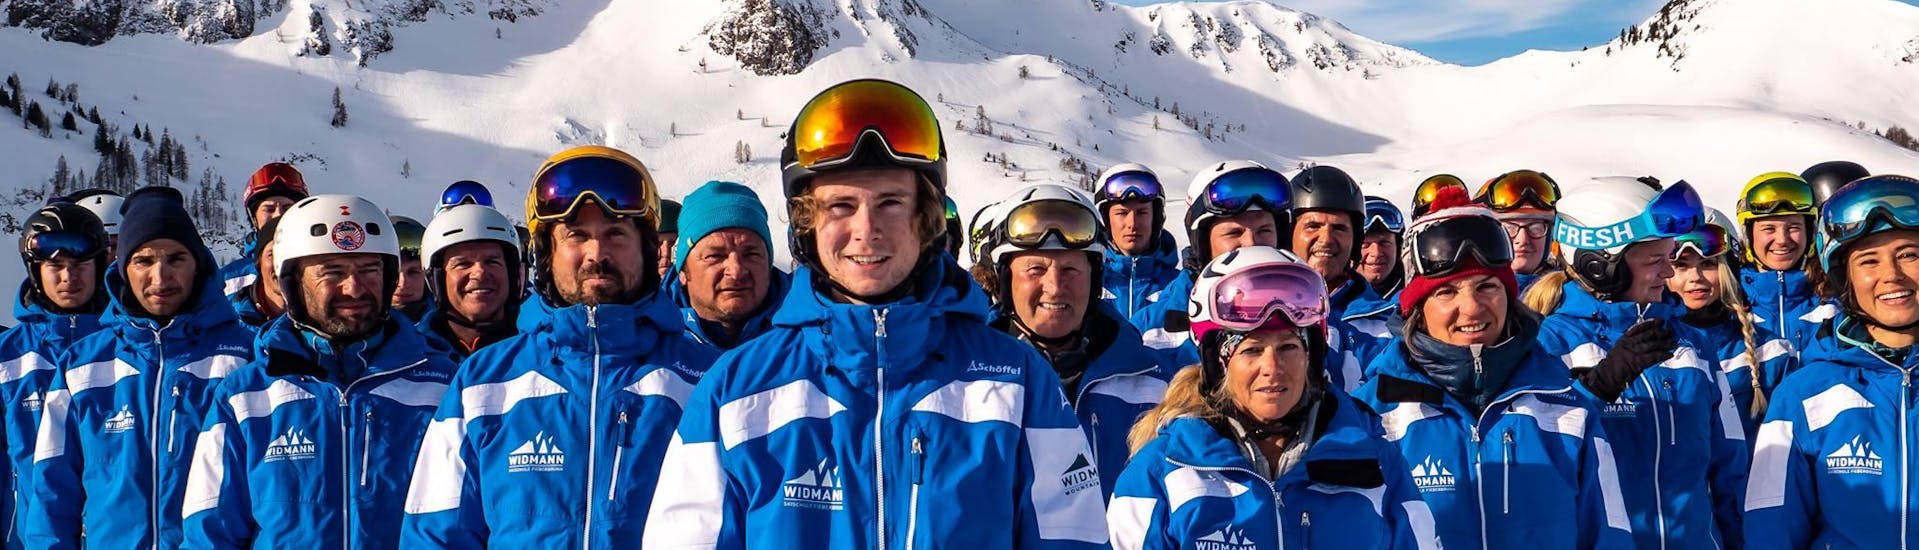 Die Skilehrer der Skischule Fieberbrunn Widmann Mountain Sports die unter anderem auch den Skikurs für Erwachsene - Fortgeschritten unterrichten, posieren gemeinsam für ein Gruppenfoto.